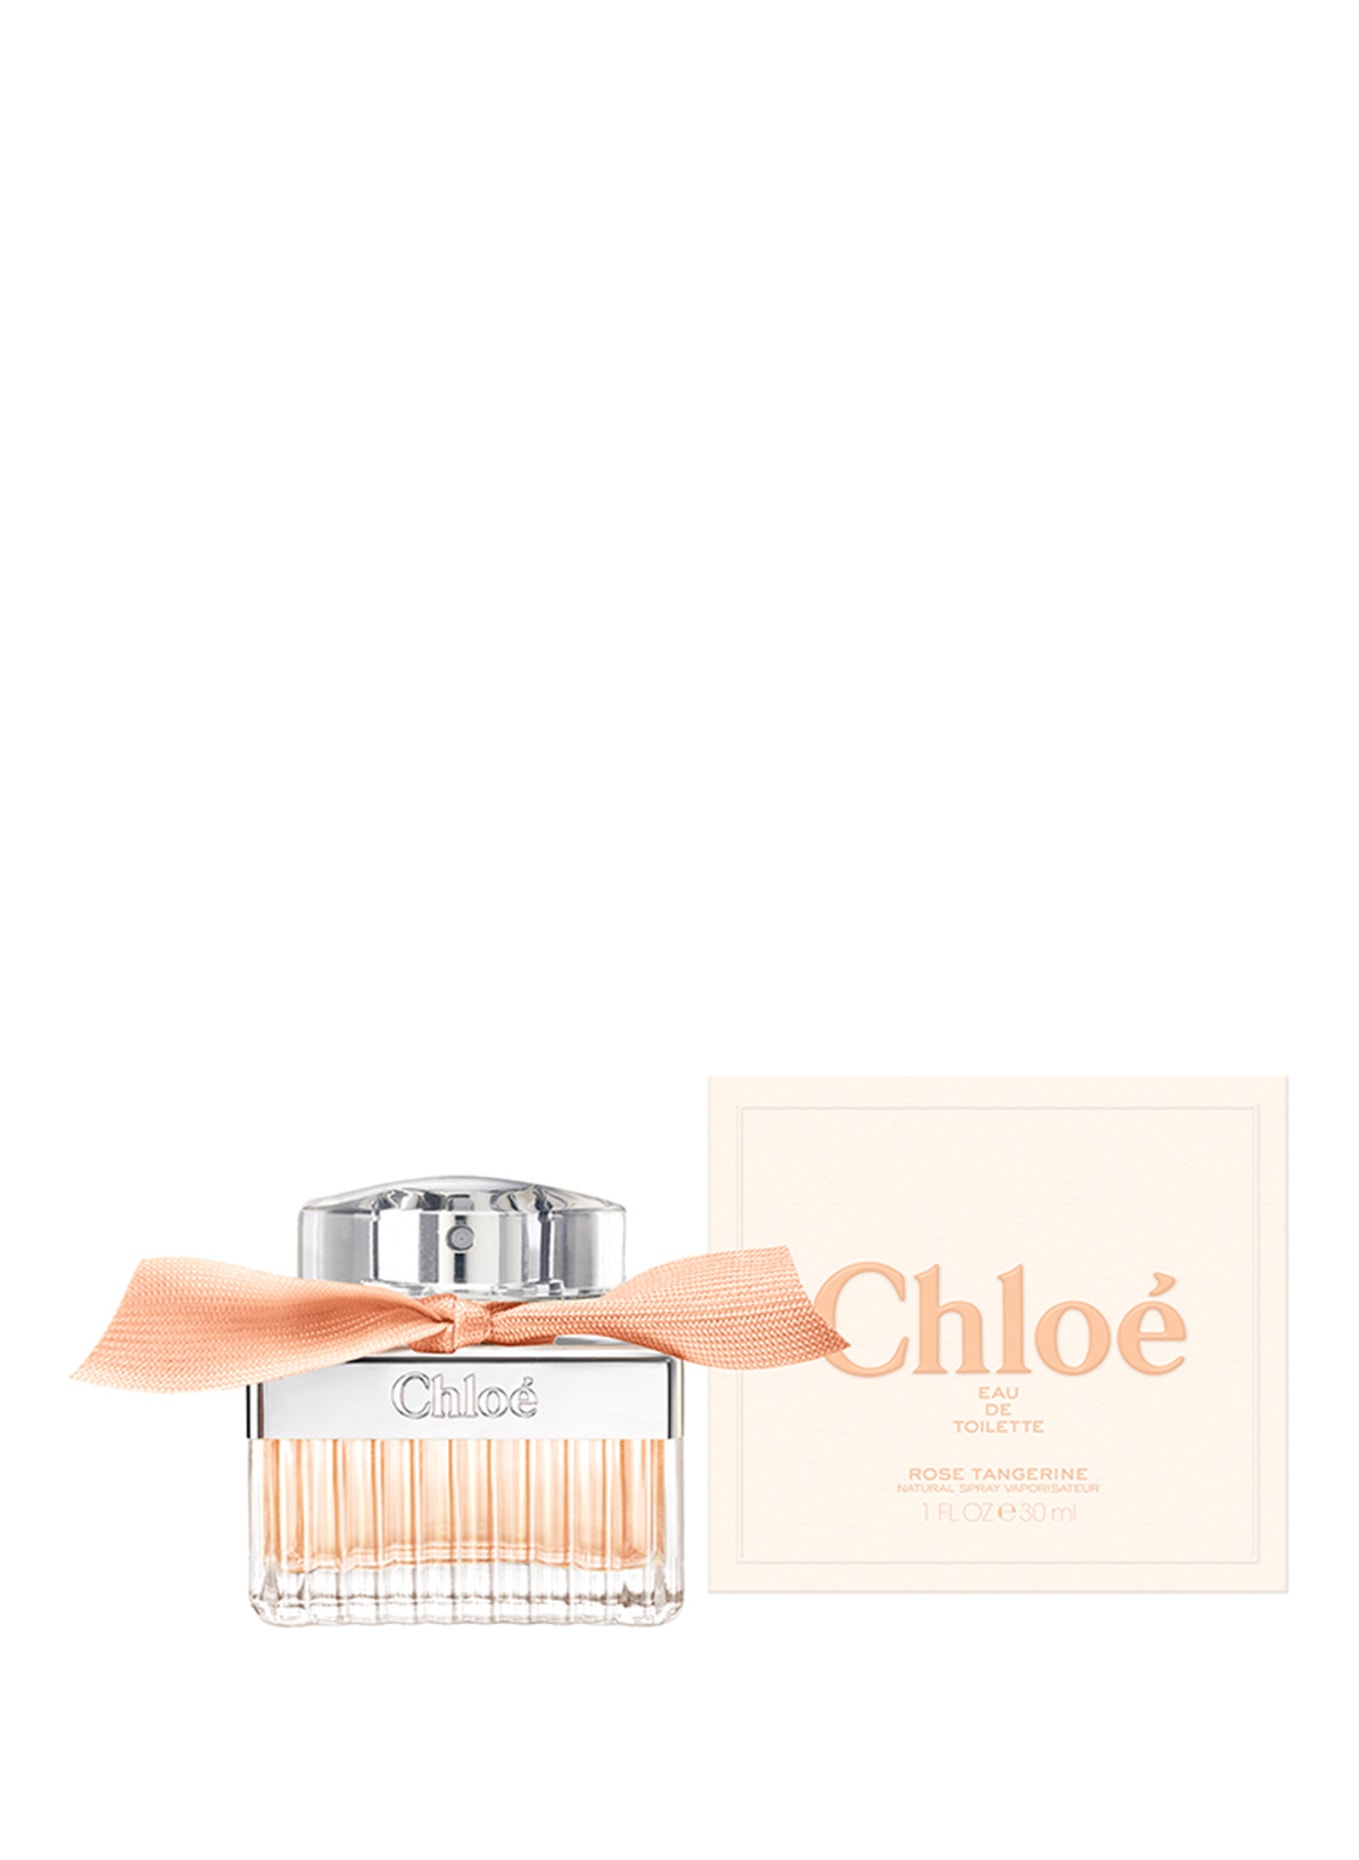 Chloé Fragrances ROSE TANGERINE (Obrázek 2)